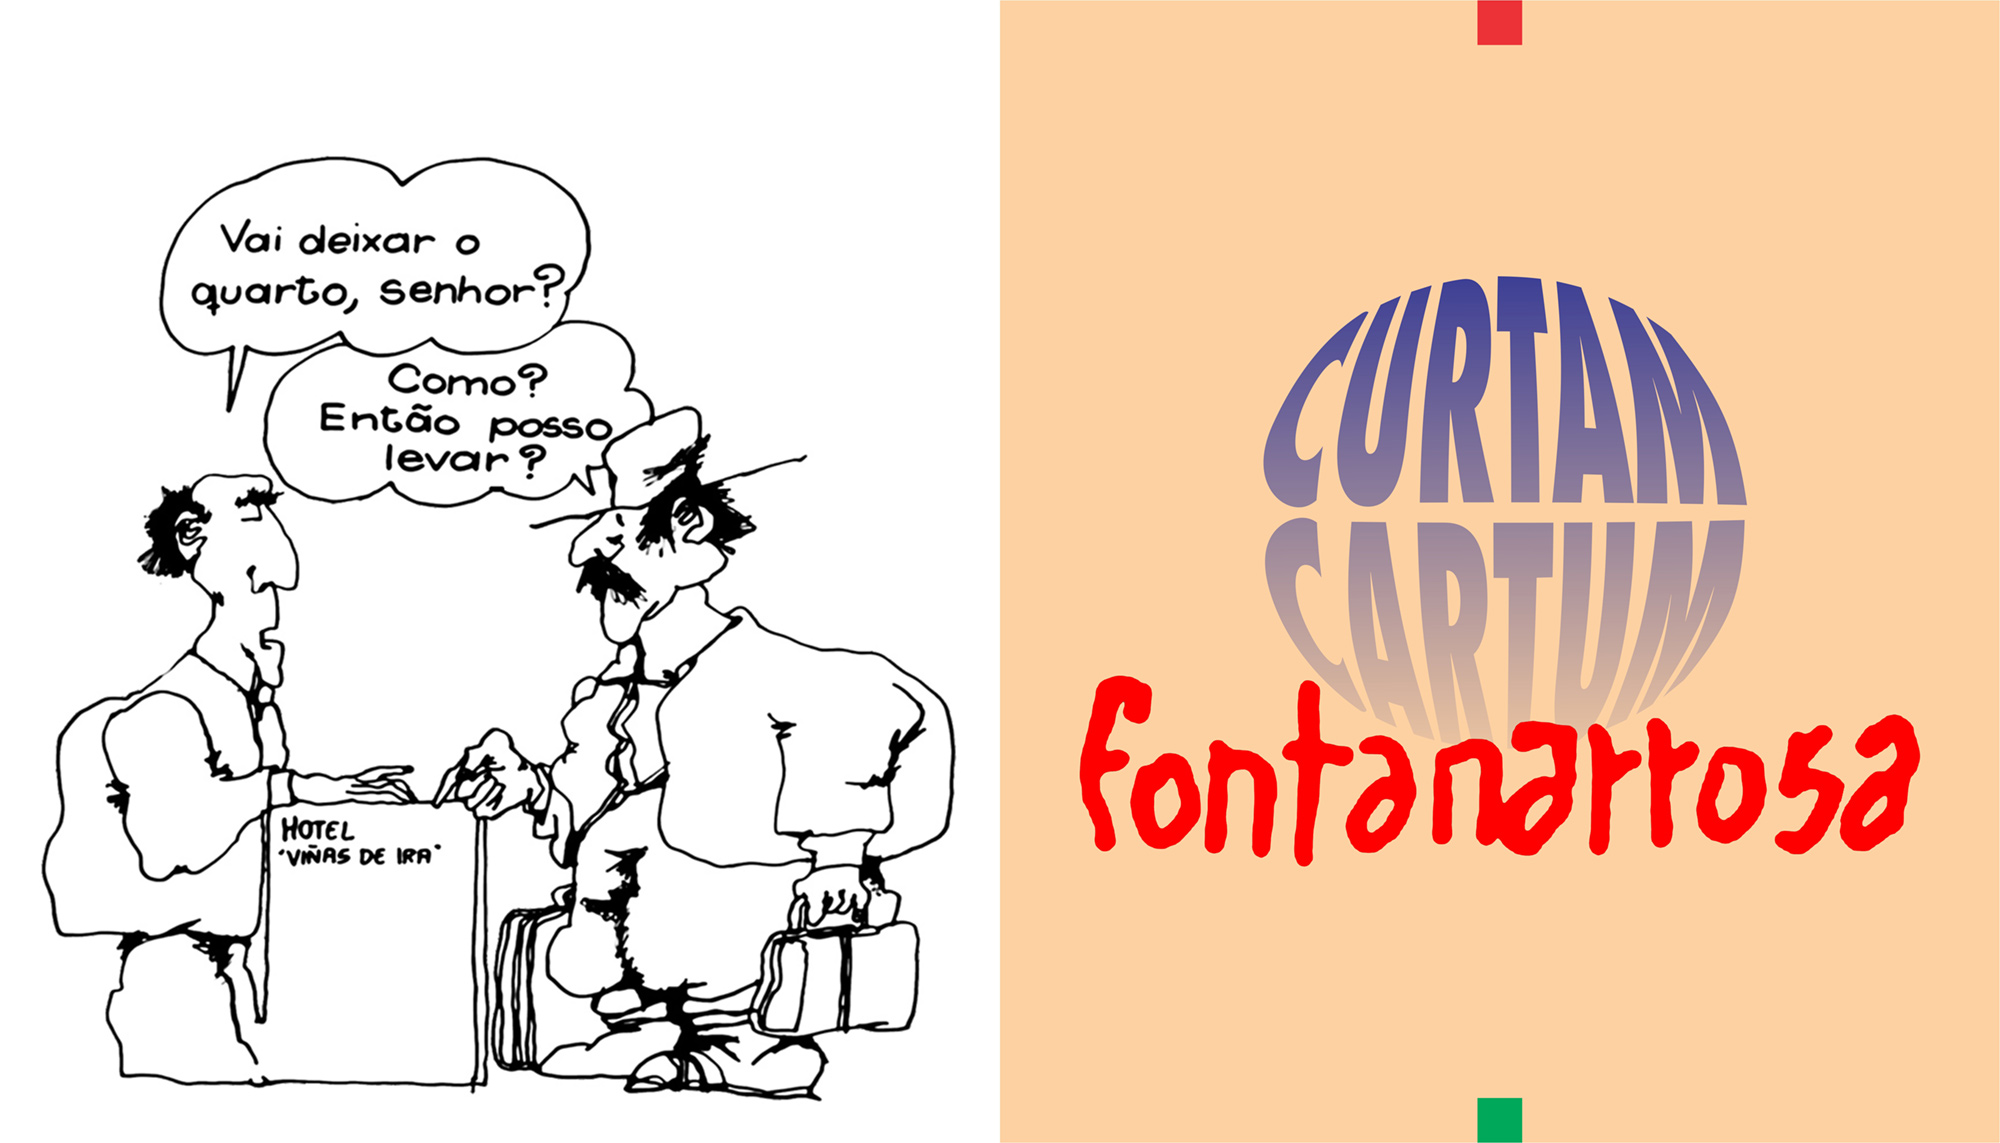 curtam-cartum-fontanarrosa-333